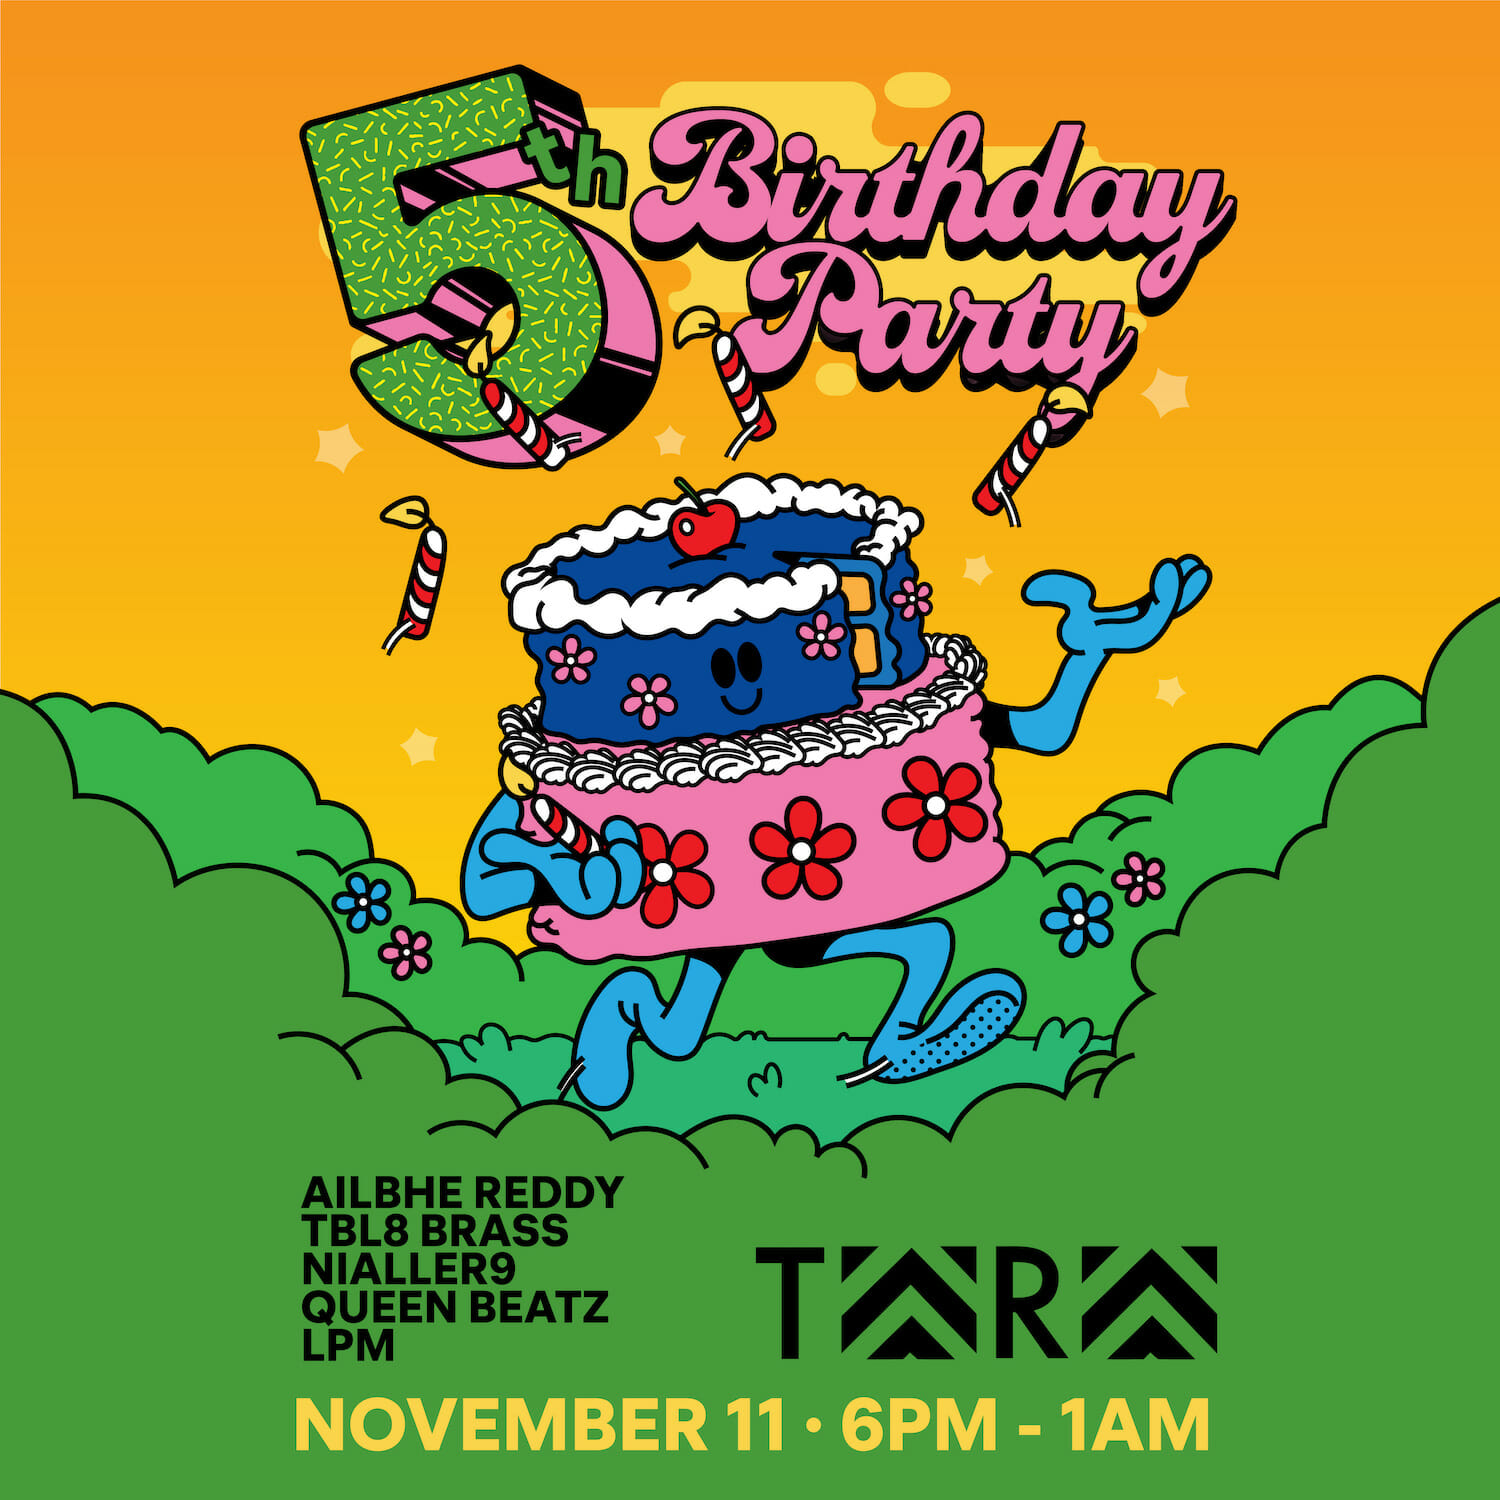 Tara’s 5th Birthday Party